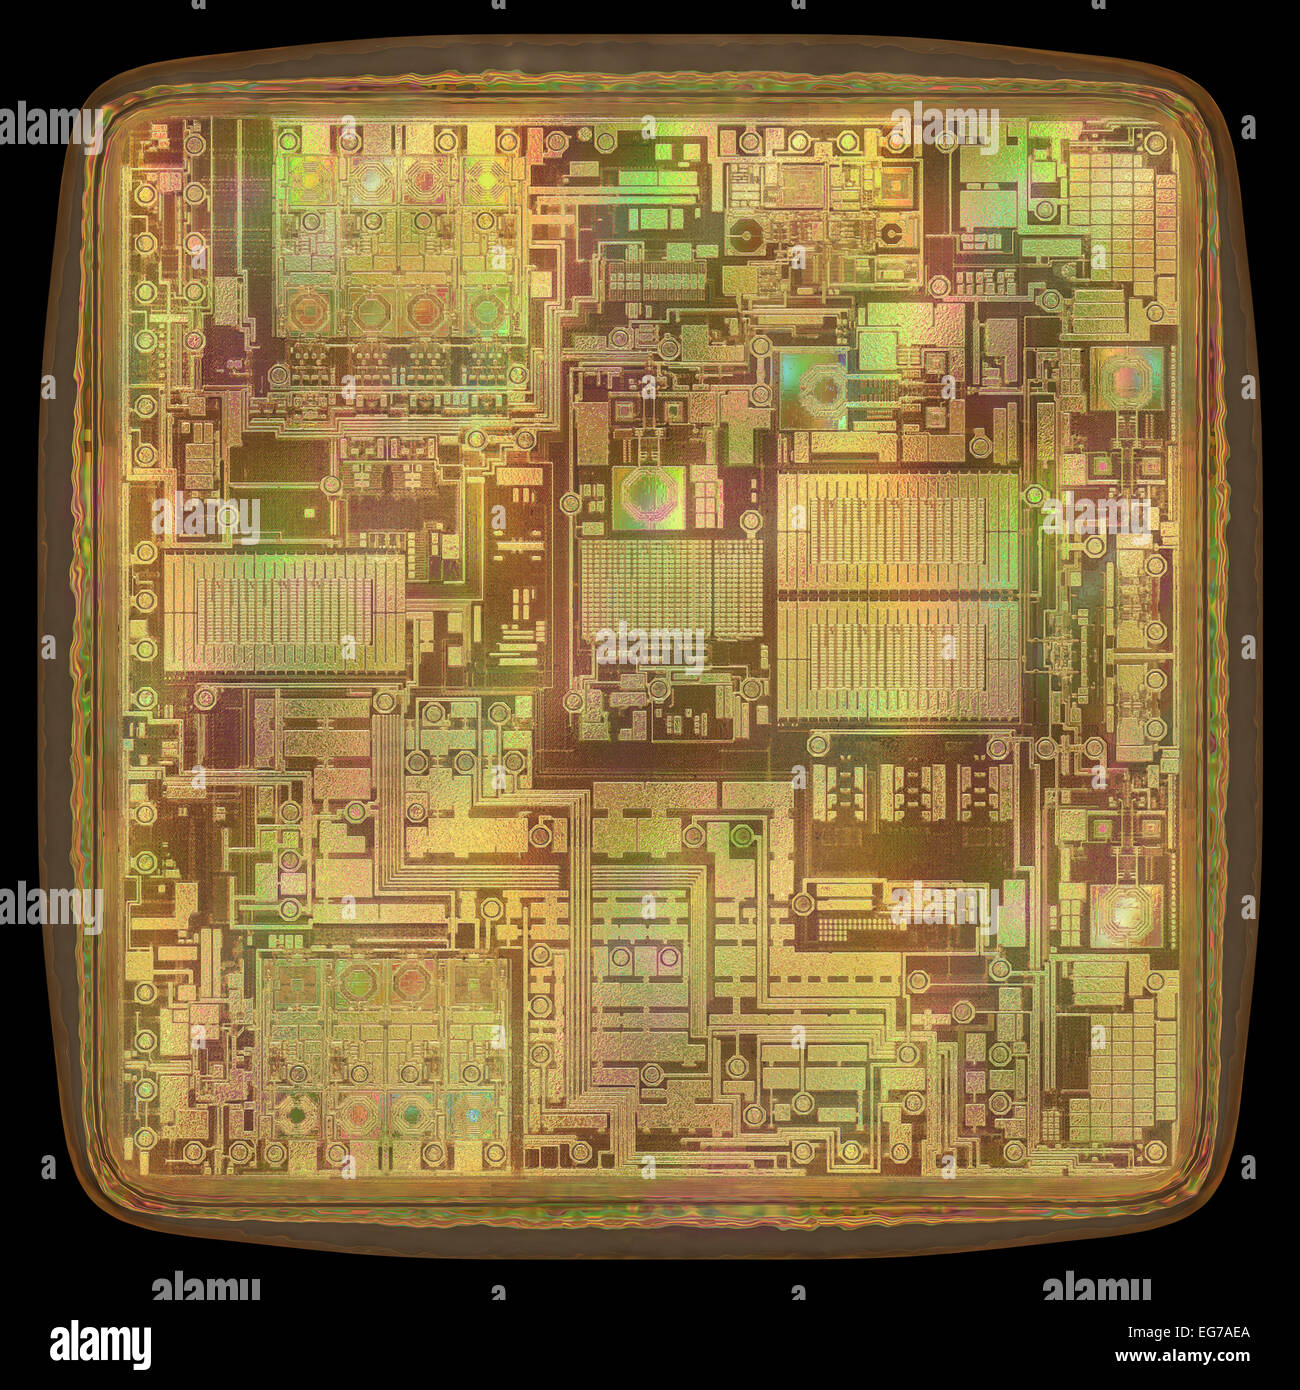 Immagine 3D concetto di una espansione del microchip core. Foto Stock